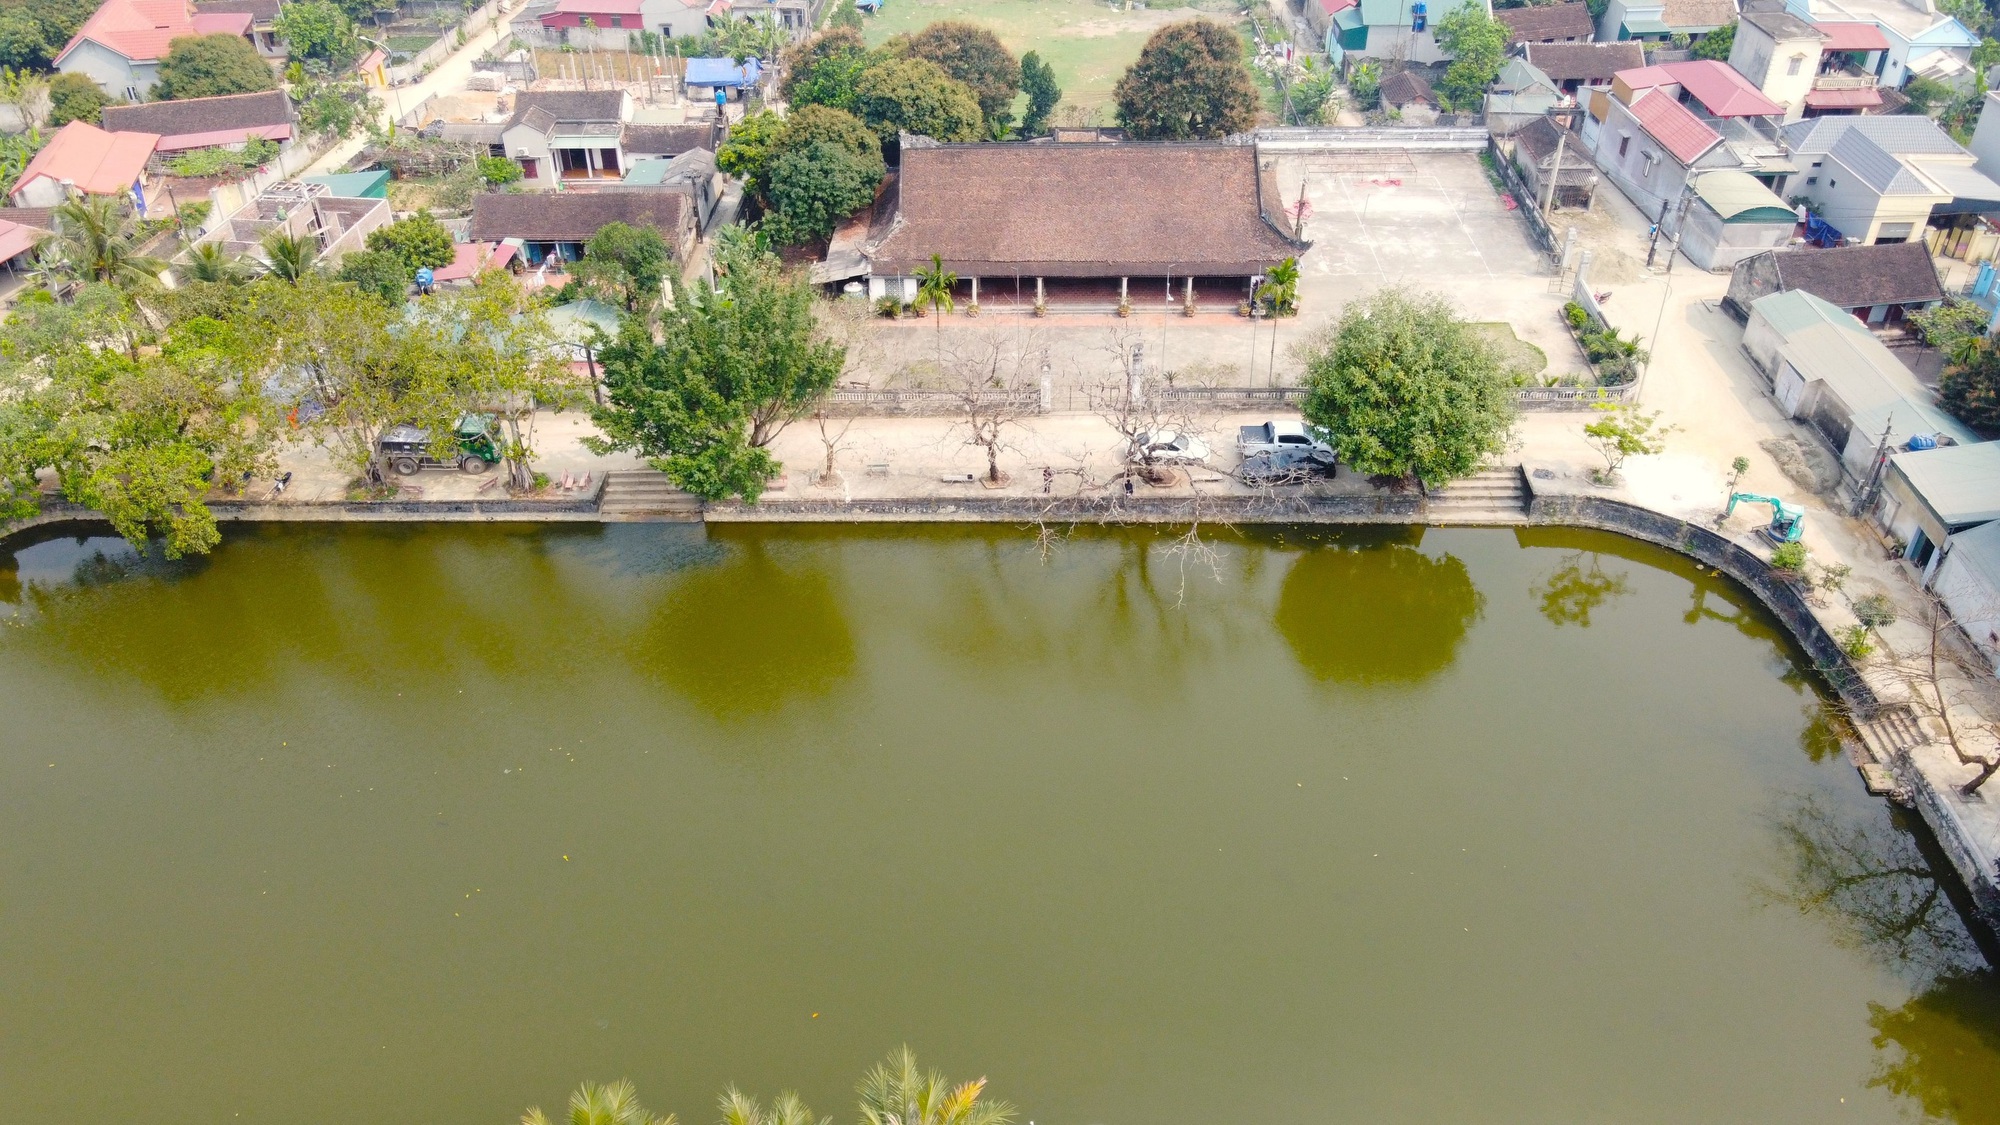 Chuyện lạ ở Thanh Hóa: Trai gái 2 làng cách một dòng sông không được lấy nhau - Ảnh 1.